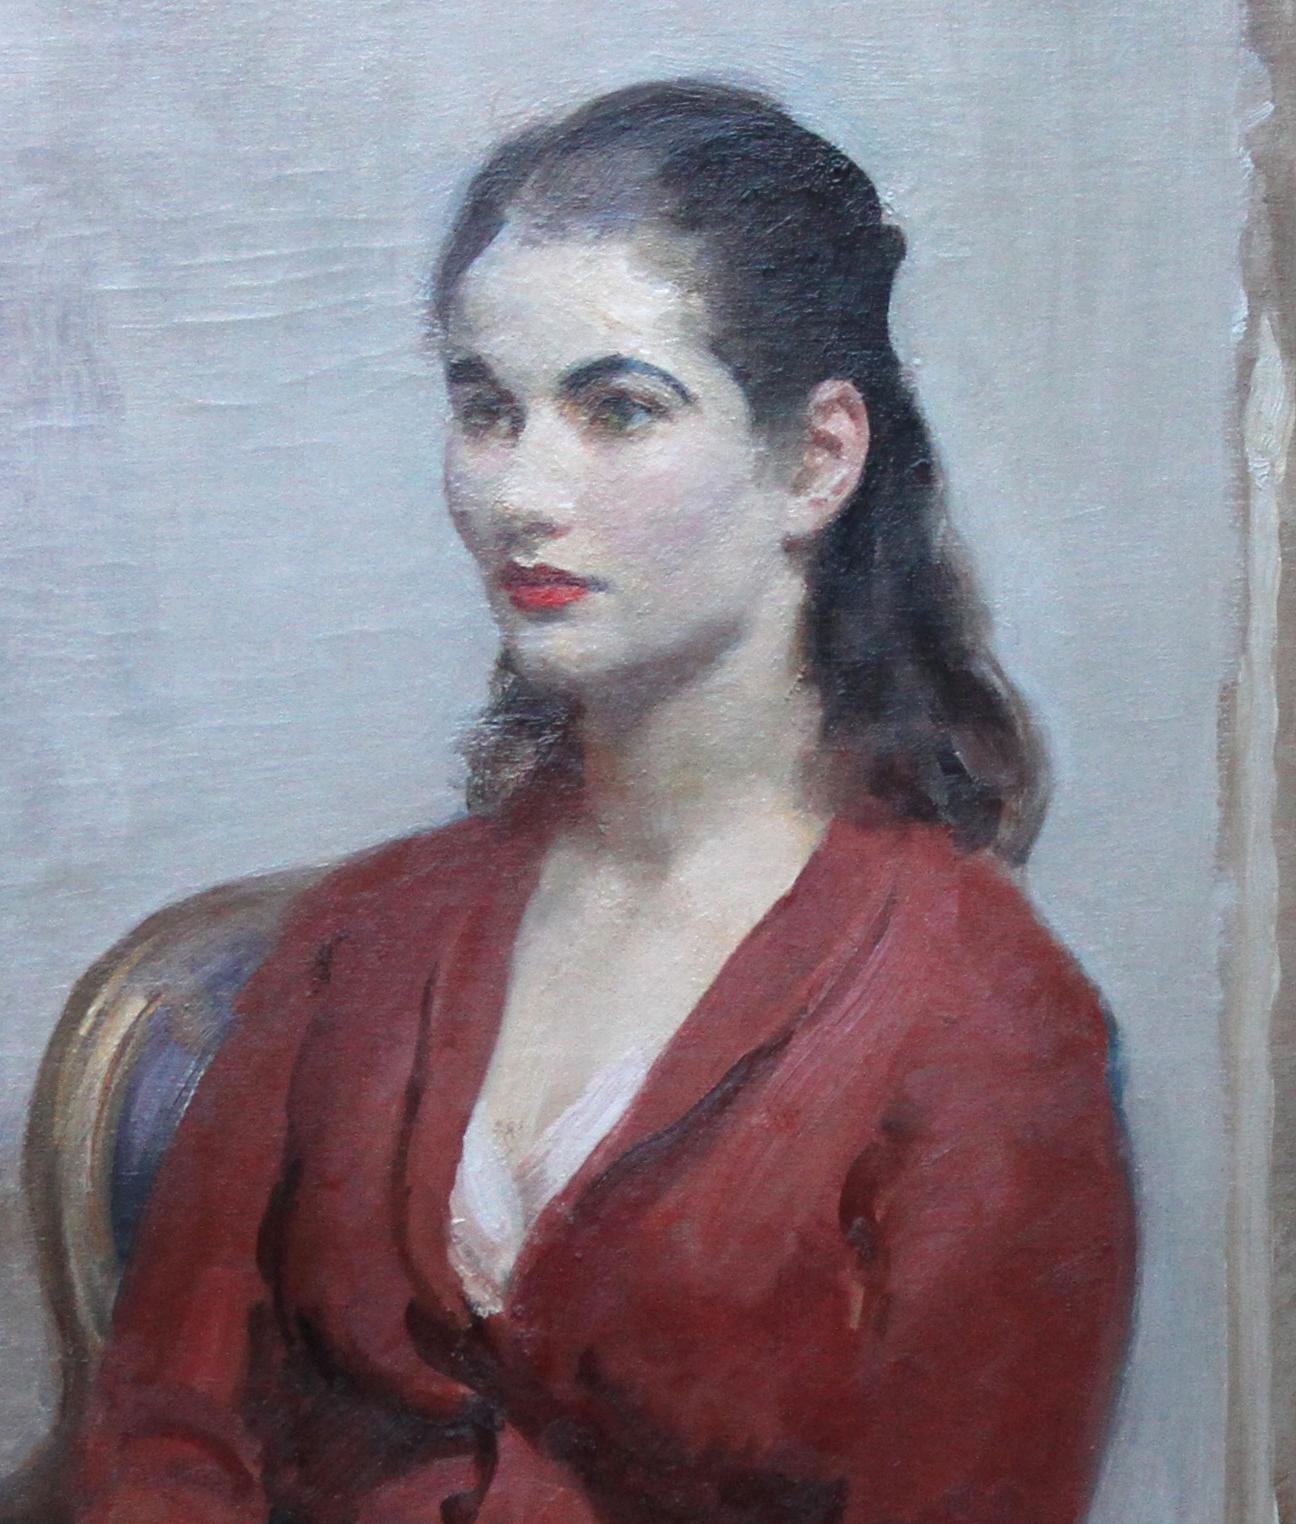 Peinte vers 1920 par le célèbre portraitiste impressionniste britannique Walter Ernest Webster, cette charmante peinture à l'huile représente une belle jeune femme dans une palette impressionniste.
Signé en bas à droite.
Provenance . Succession de